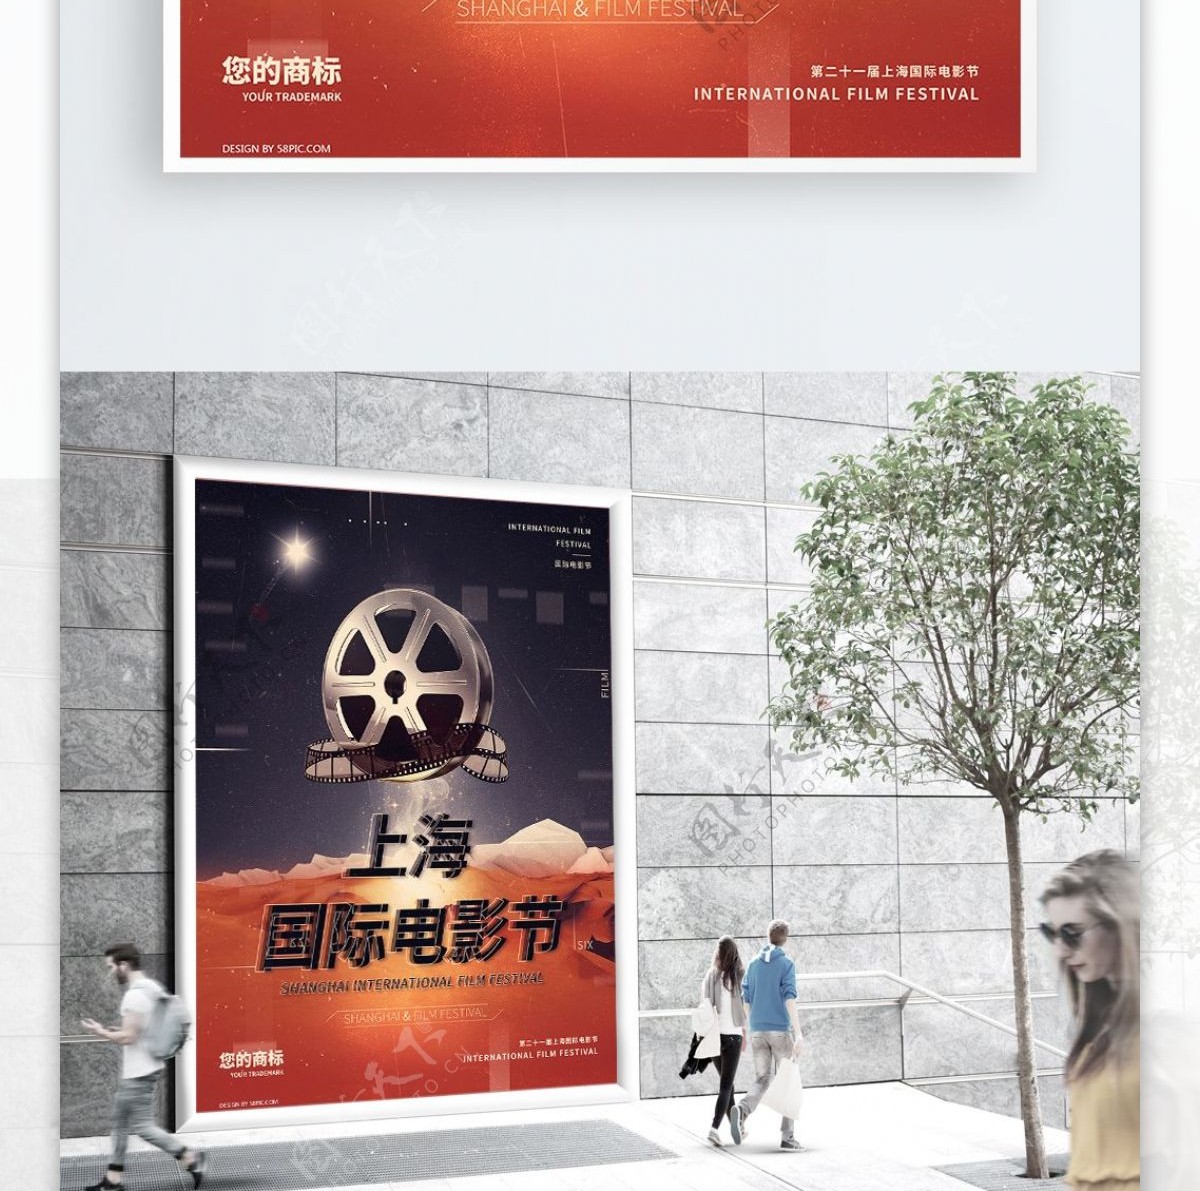 黑金风上海国际电影节海报